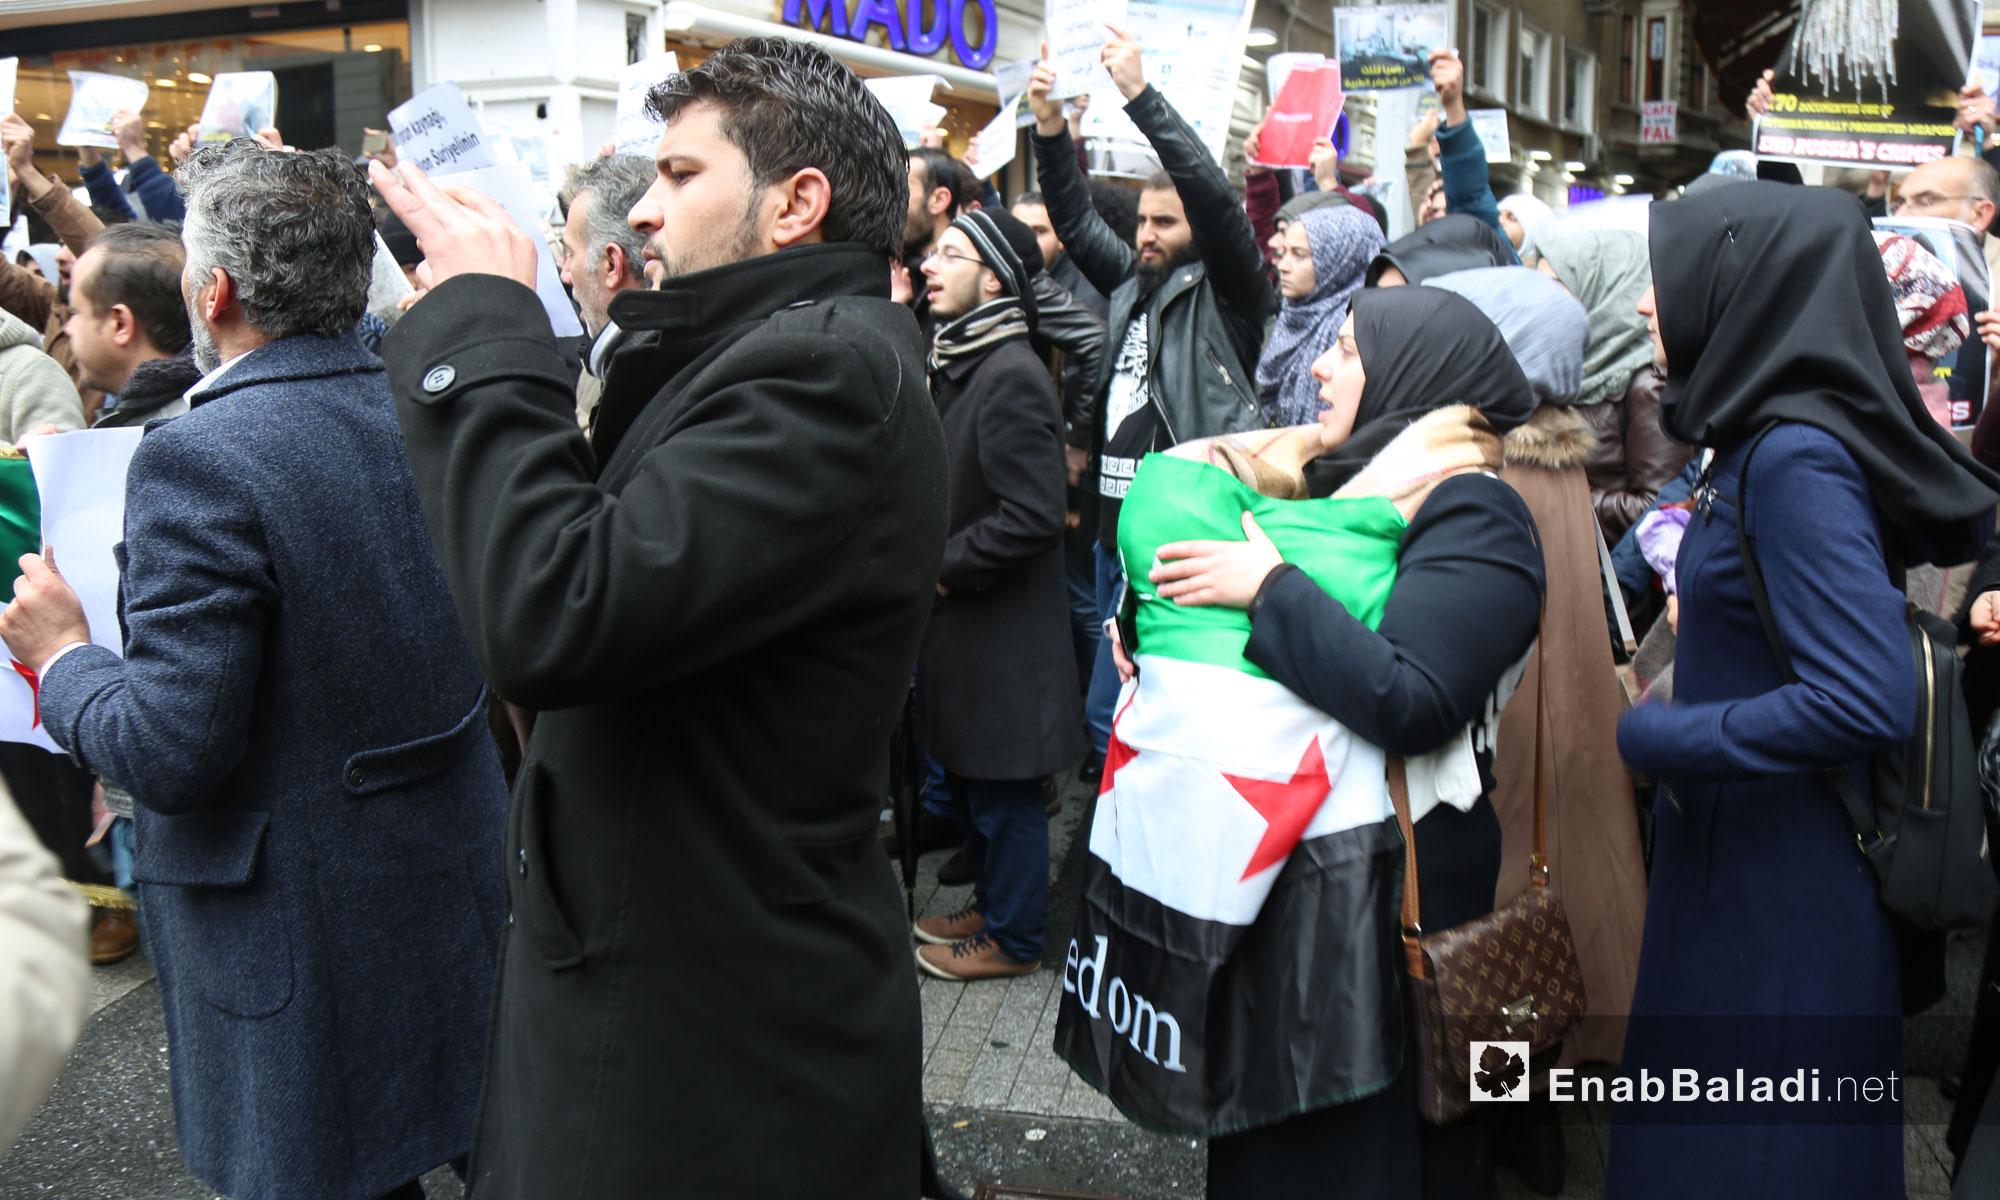 سوريون يتظاهرون أمام القنصلية الروسية في اسطنبول لنجدة حلب - 13 كانون الأول 2016 (عنب بلدي)